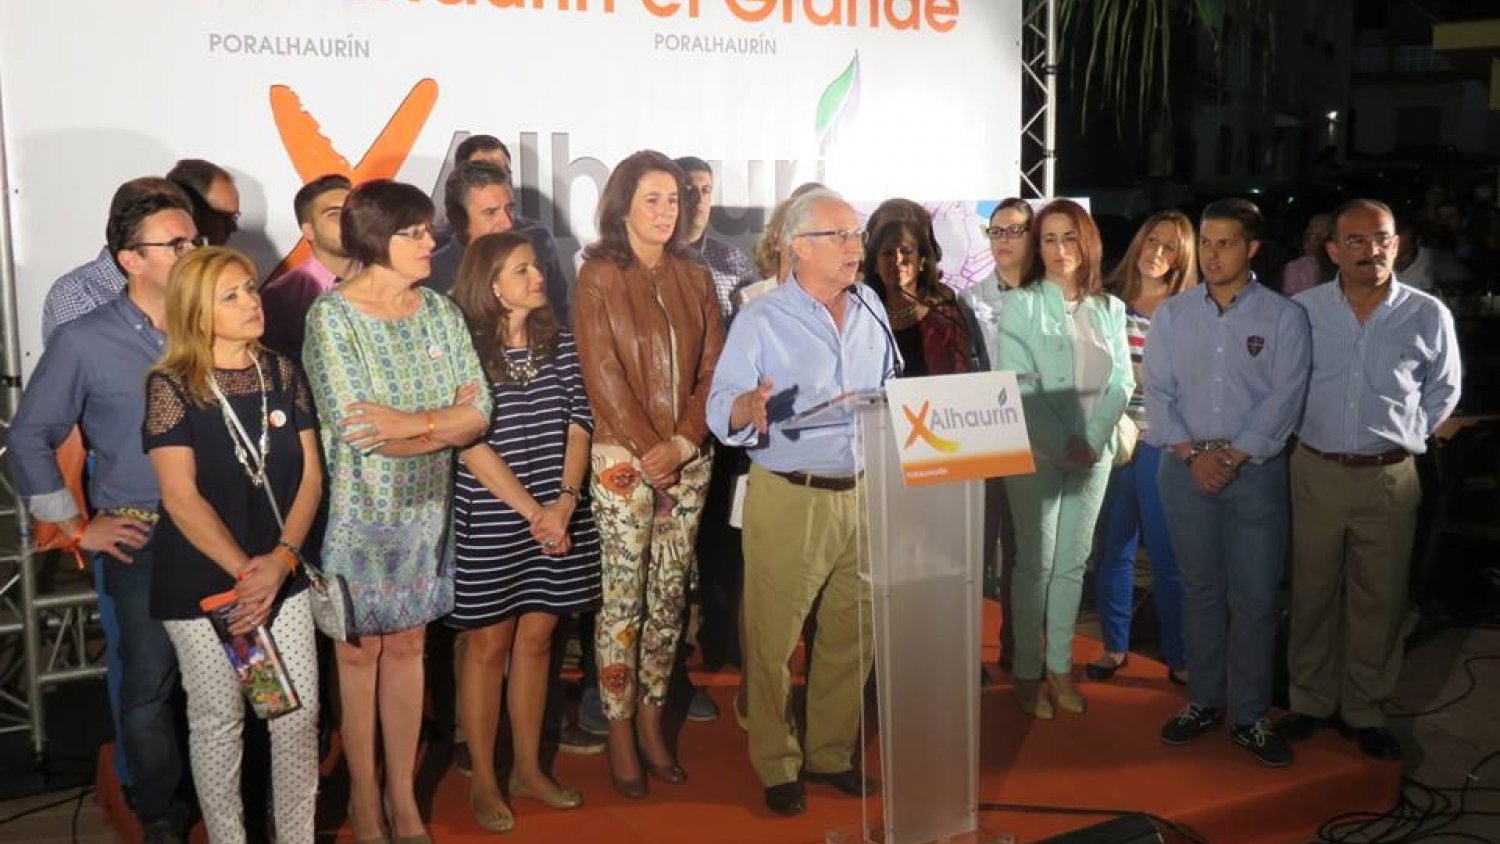 Martín Serón gobernará en minoría en Alhaurín el Grande al anunciar el PP que no apoyará a ninguna candidatura